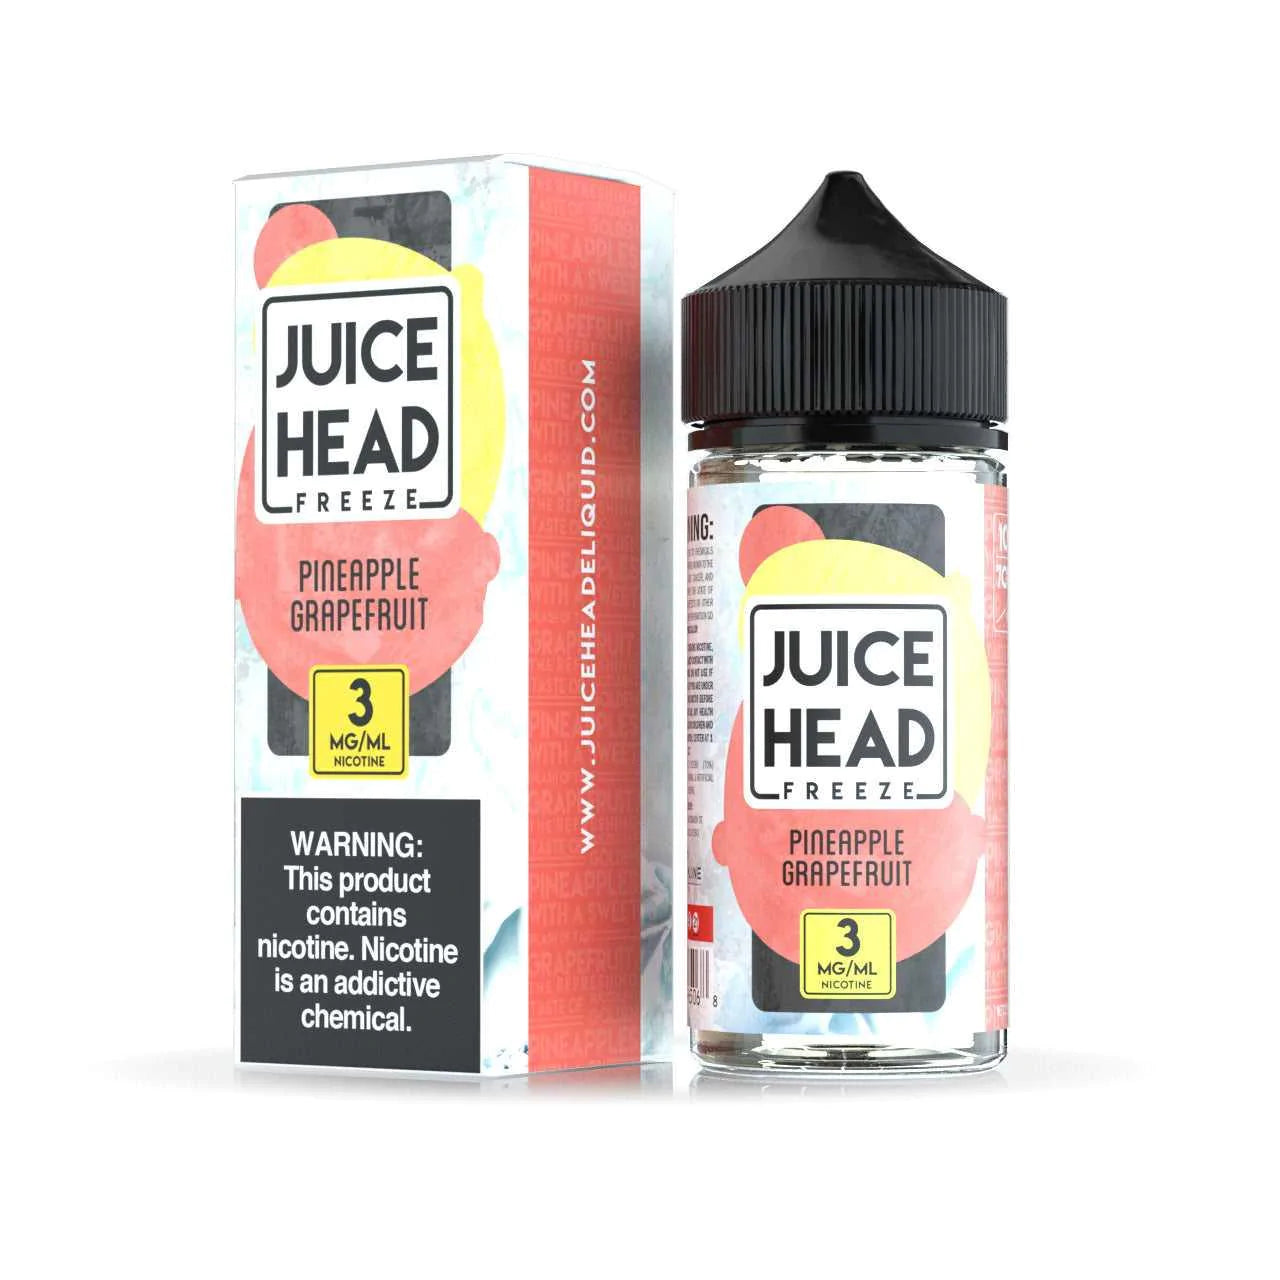 Juice Head Freeze: Pineapple Grapefruit